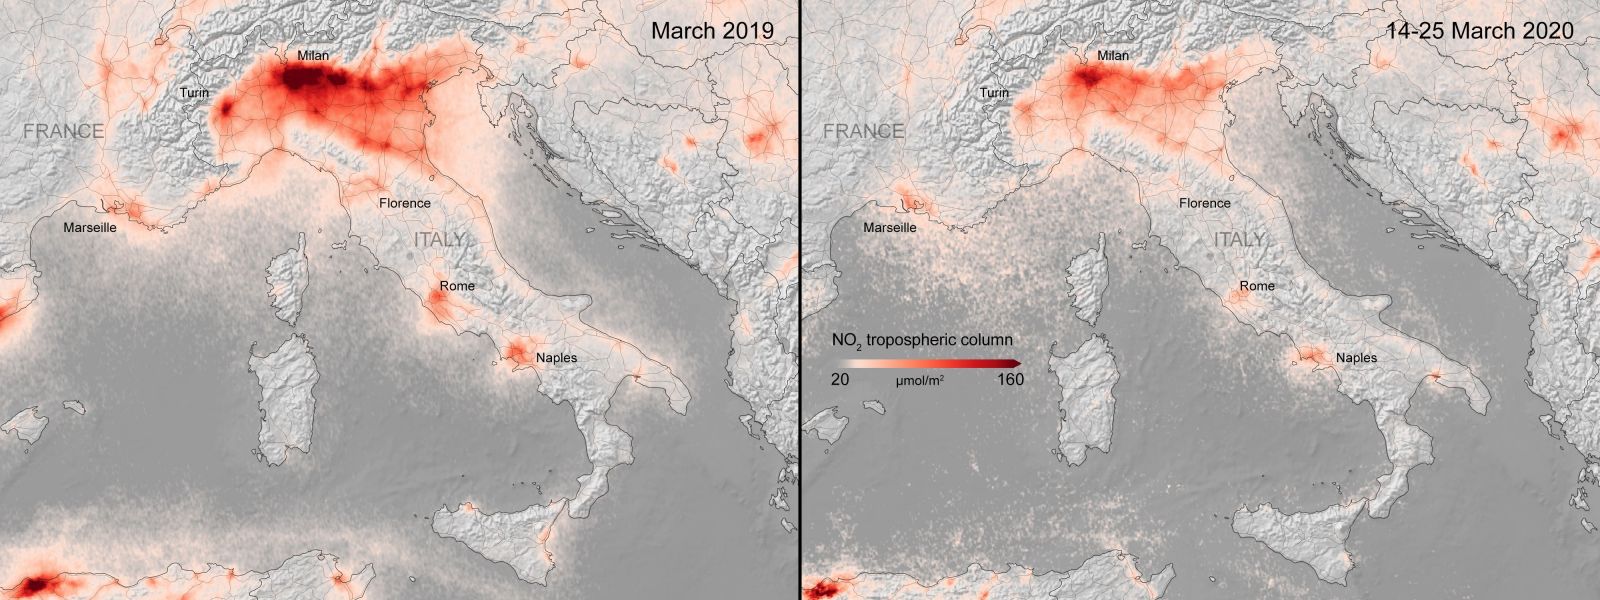 Koronavirus zlepšuje znečištěné ovzduší i v Evropě, ukazují satelitní snímky